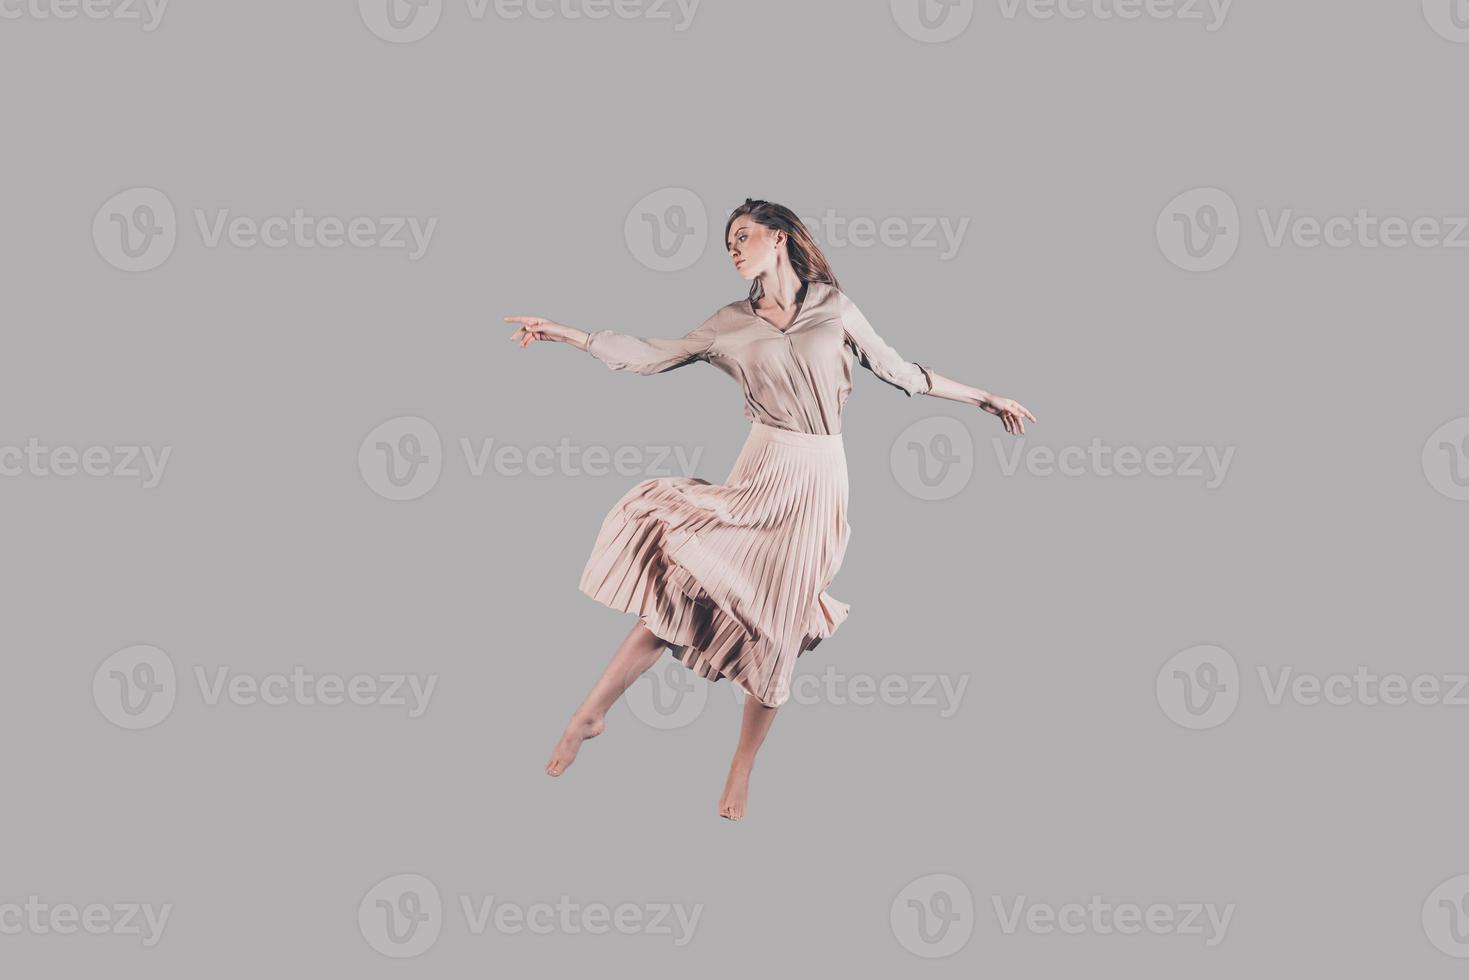 Tanzkönigin. Studioaufnahme einer attraktiven jungen Frau in schönem Kleid, die in der Luft schwebt foto